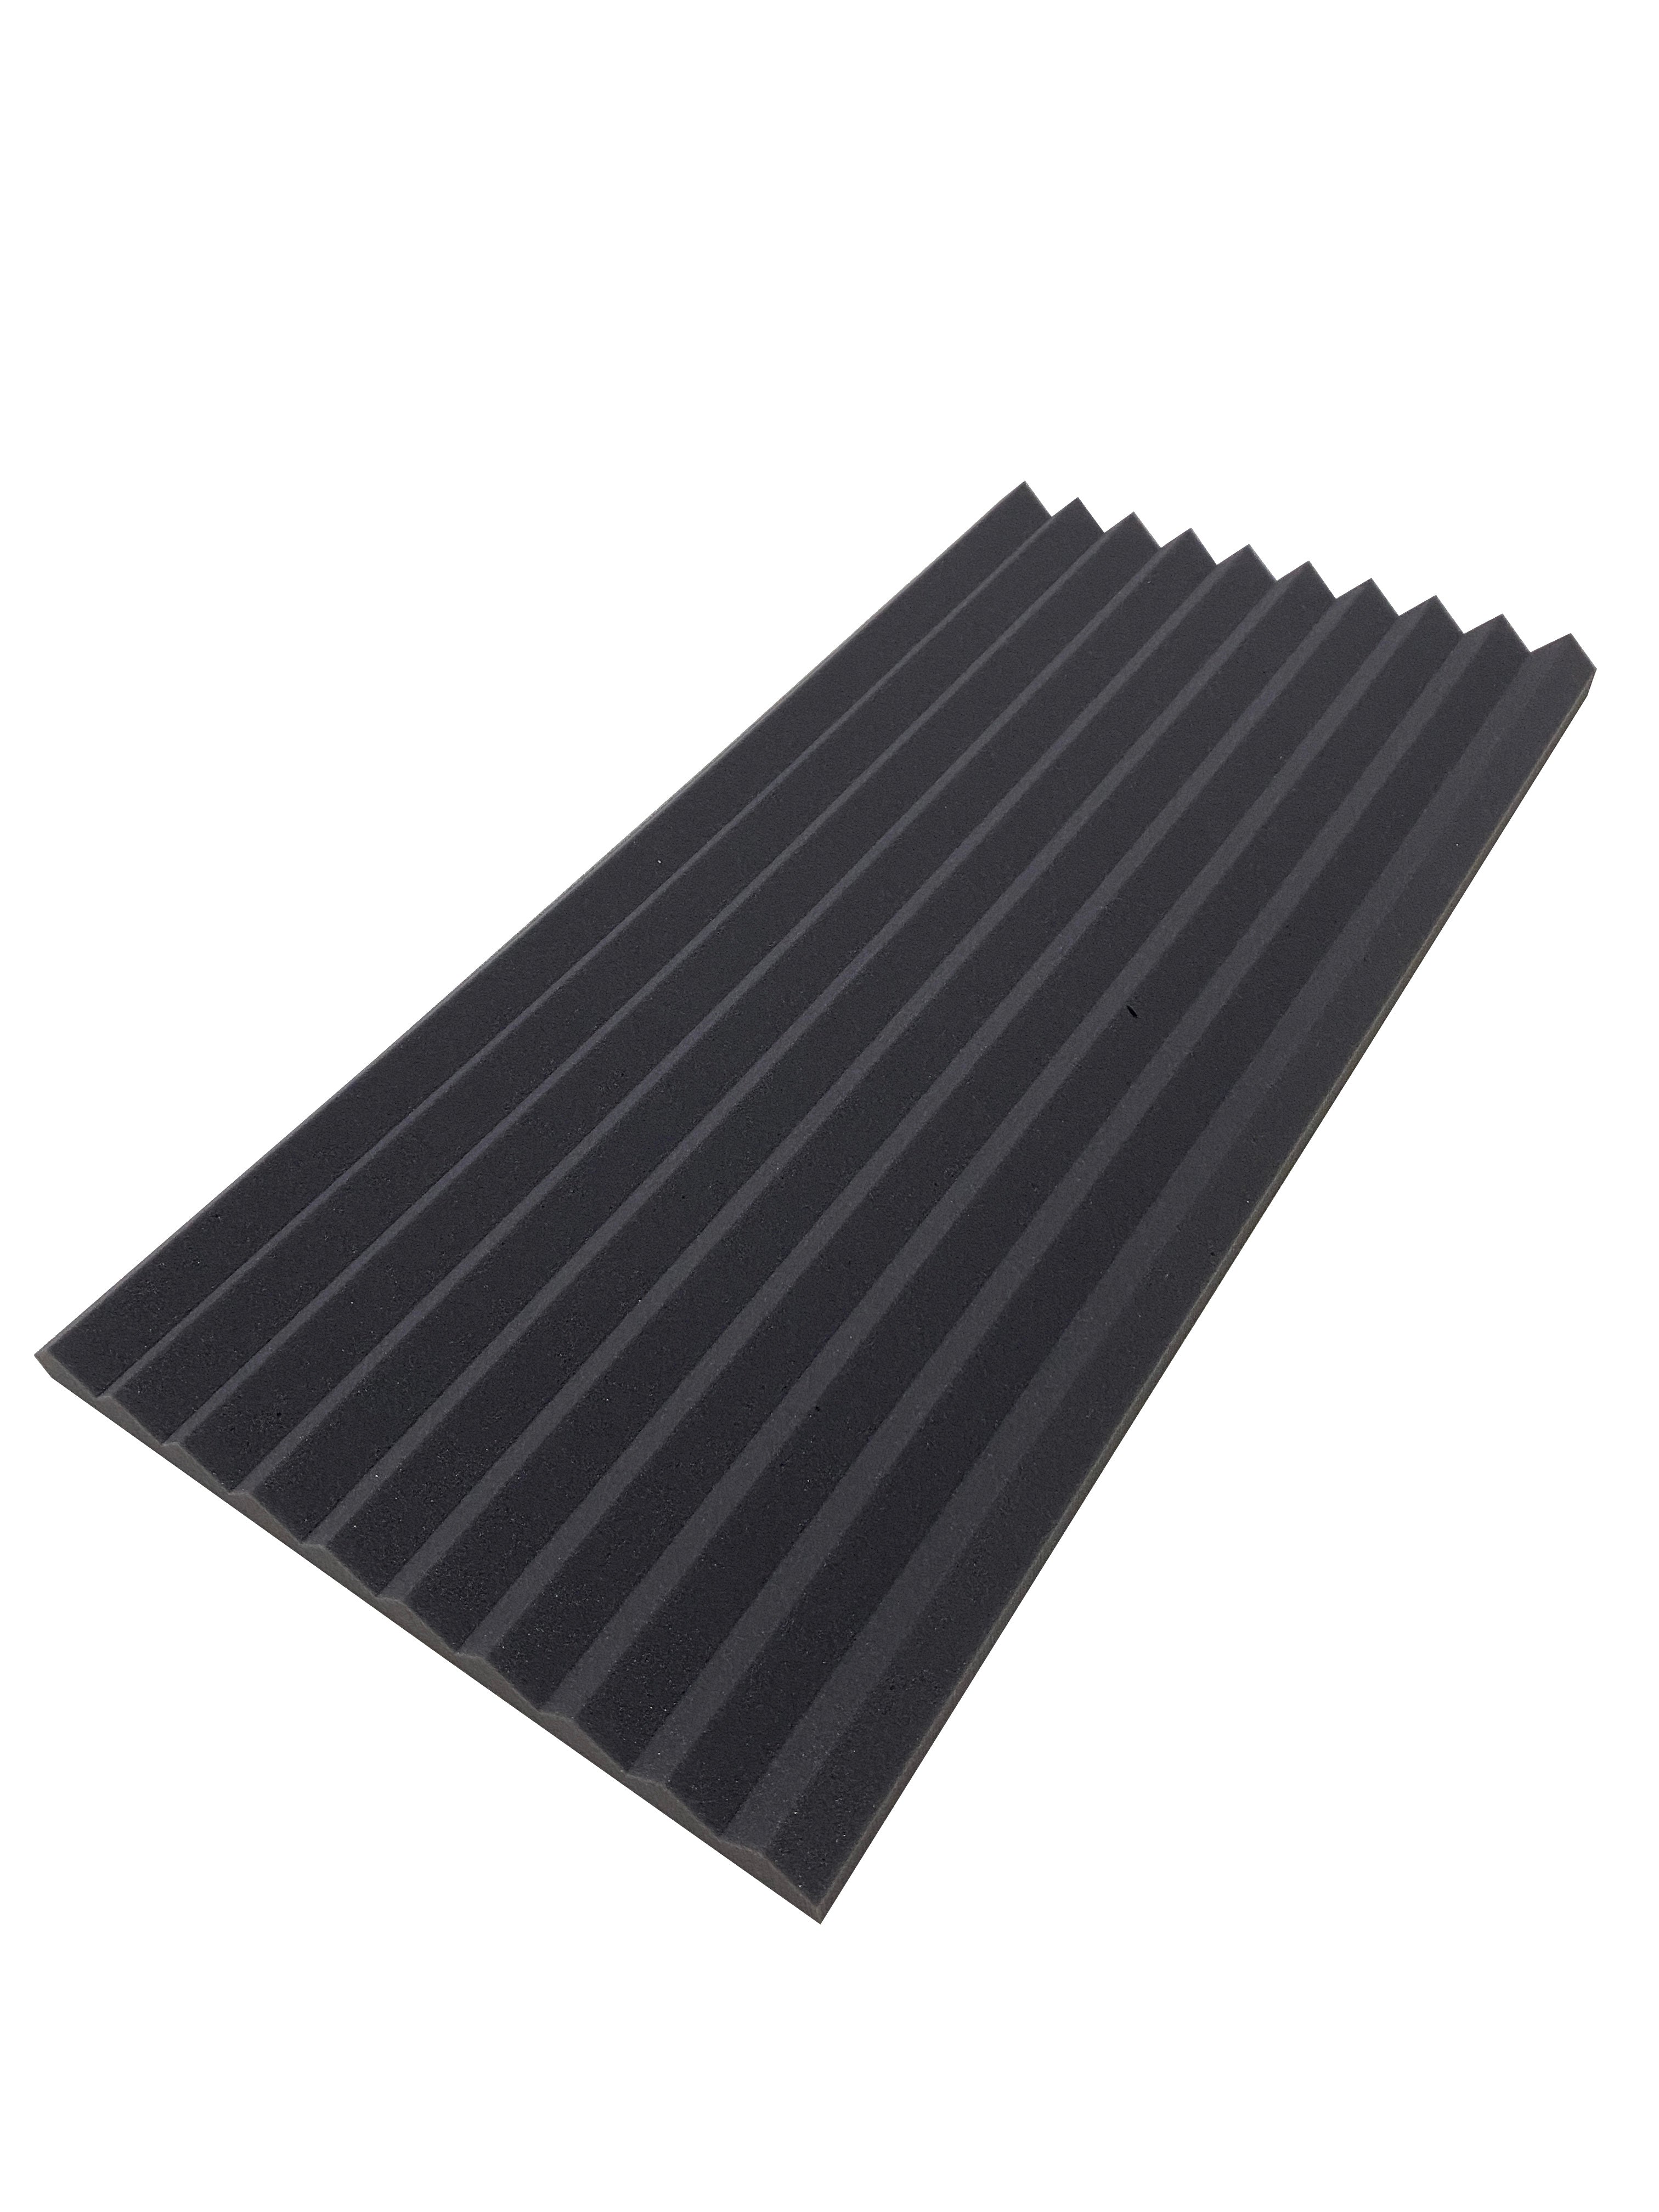 Buy dark-grey Wedge PRO 30&quot;x15&quot; Acoustic Studio Foam Tile Pack